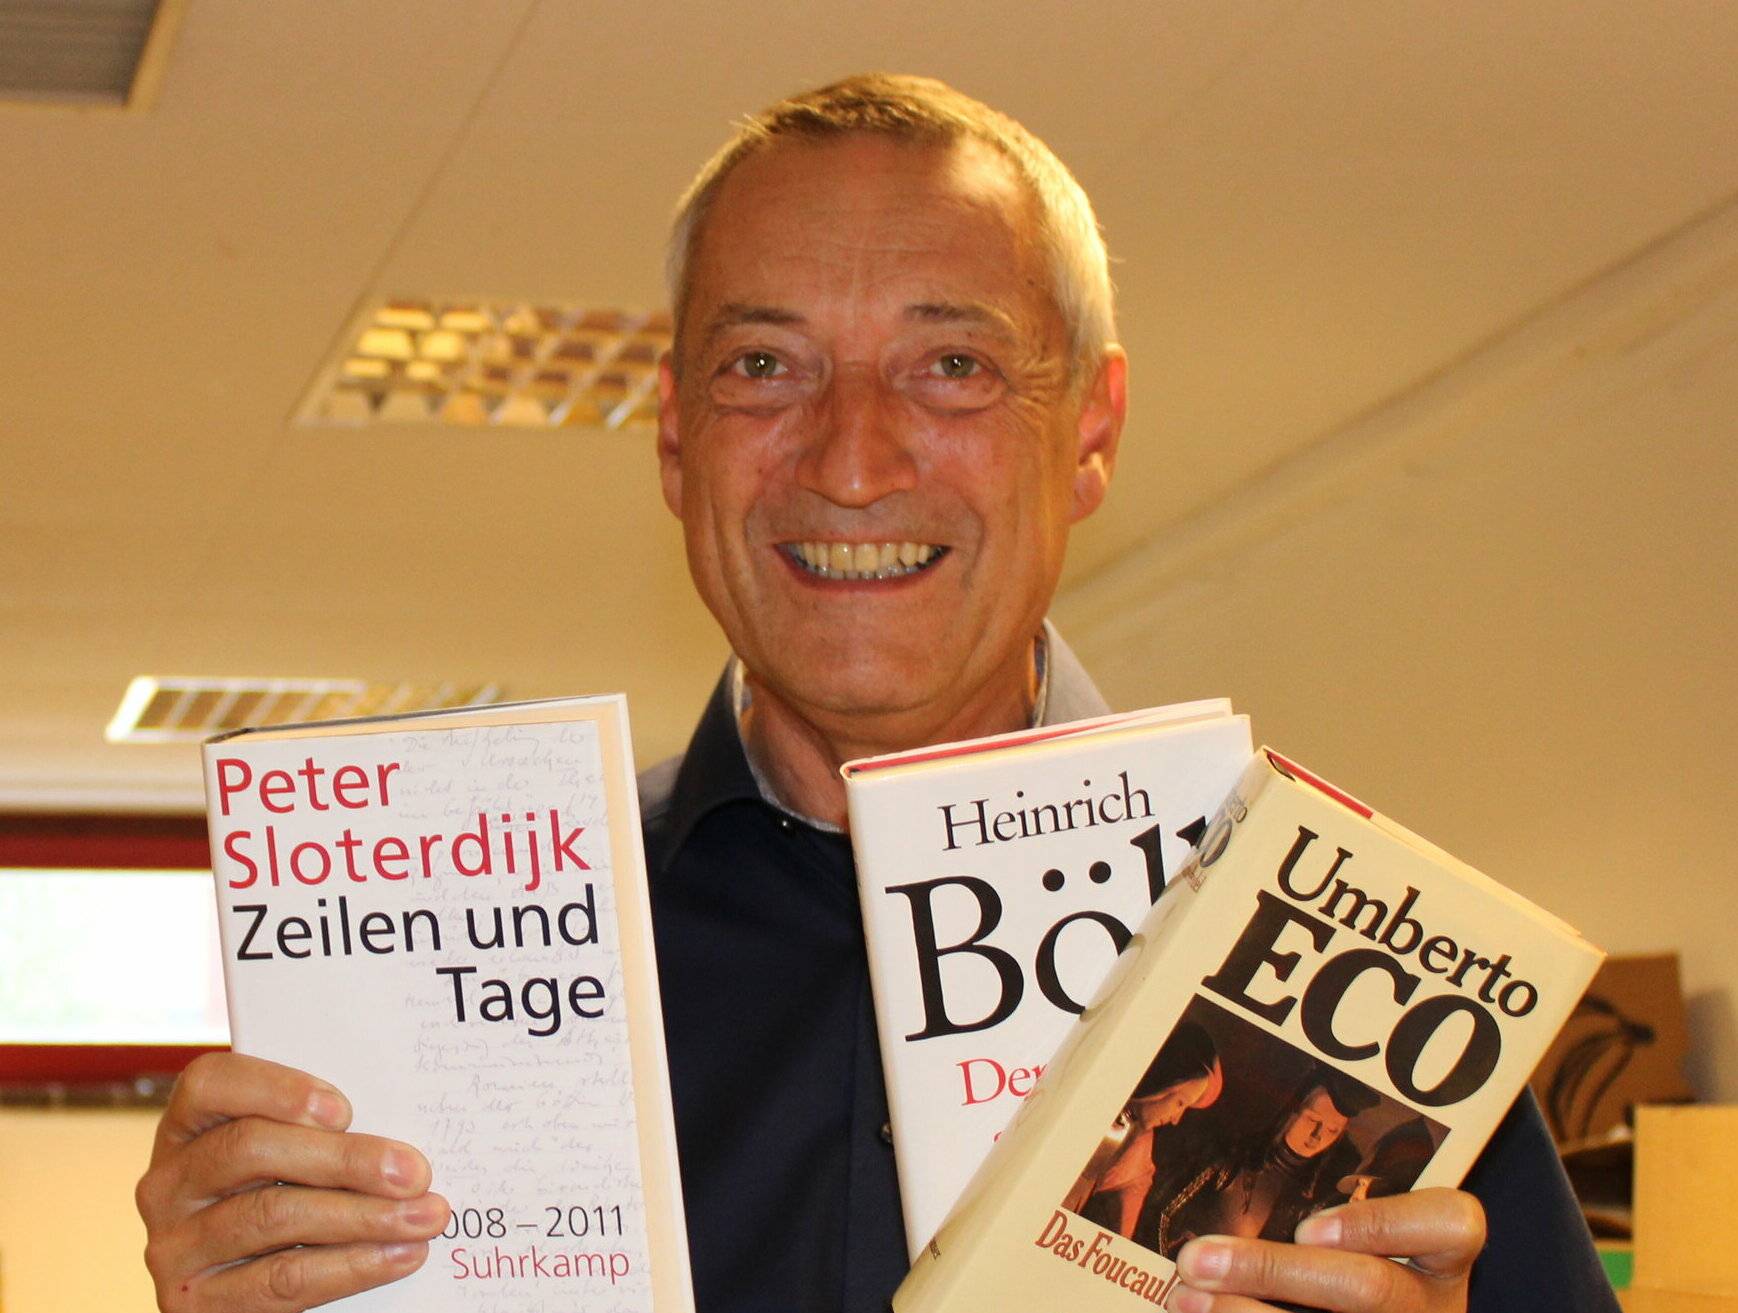  Karl-Heinz Kreuels lädt zur letzten Bücherbörse ein. 
  